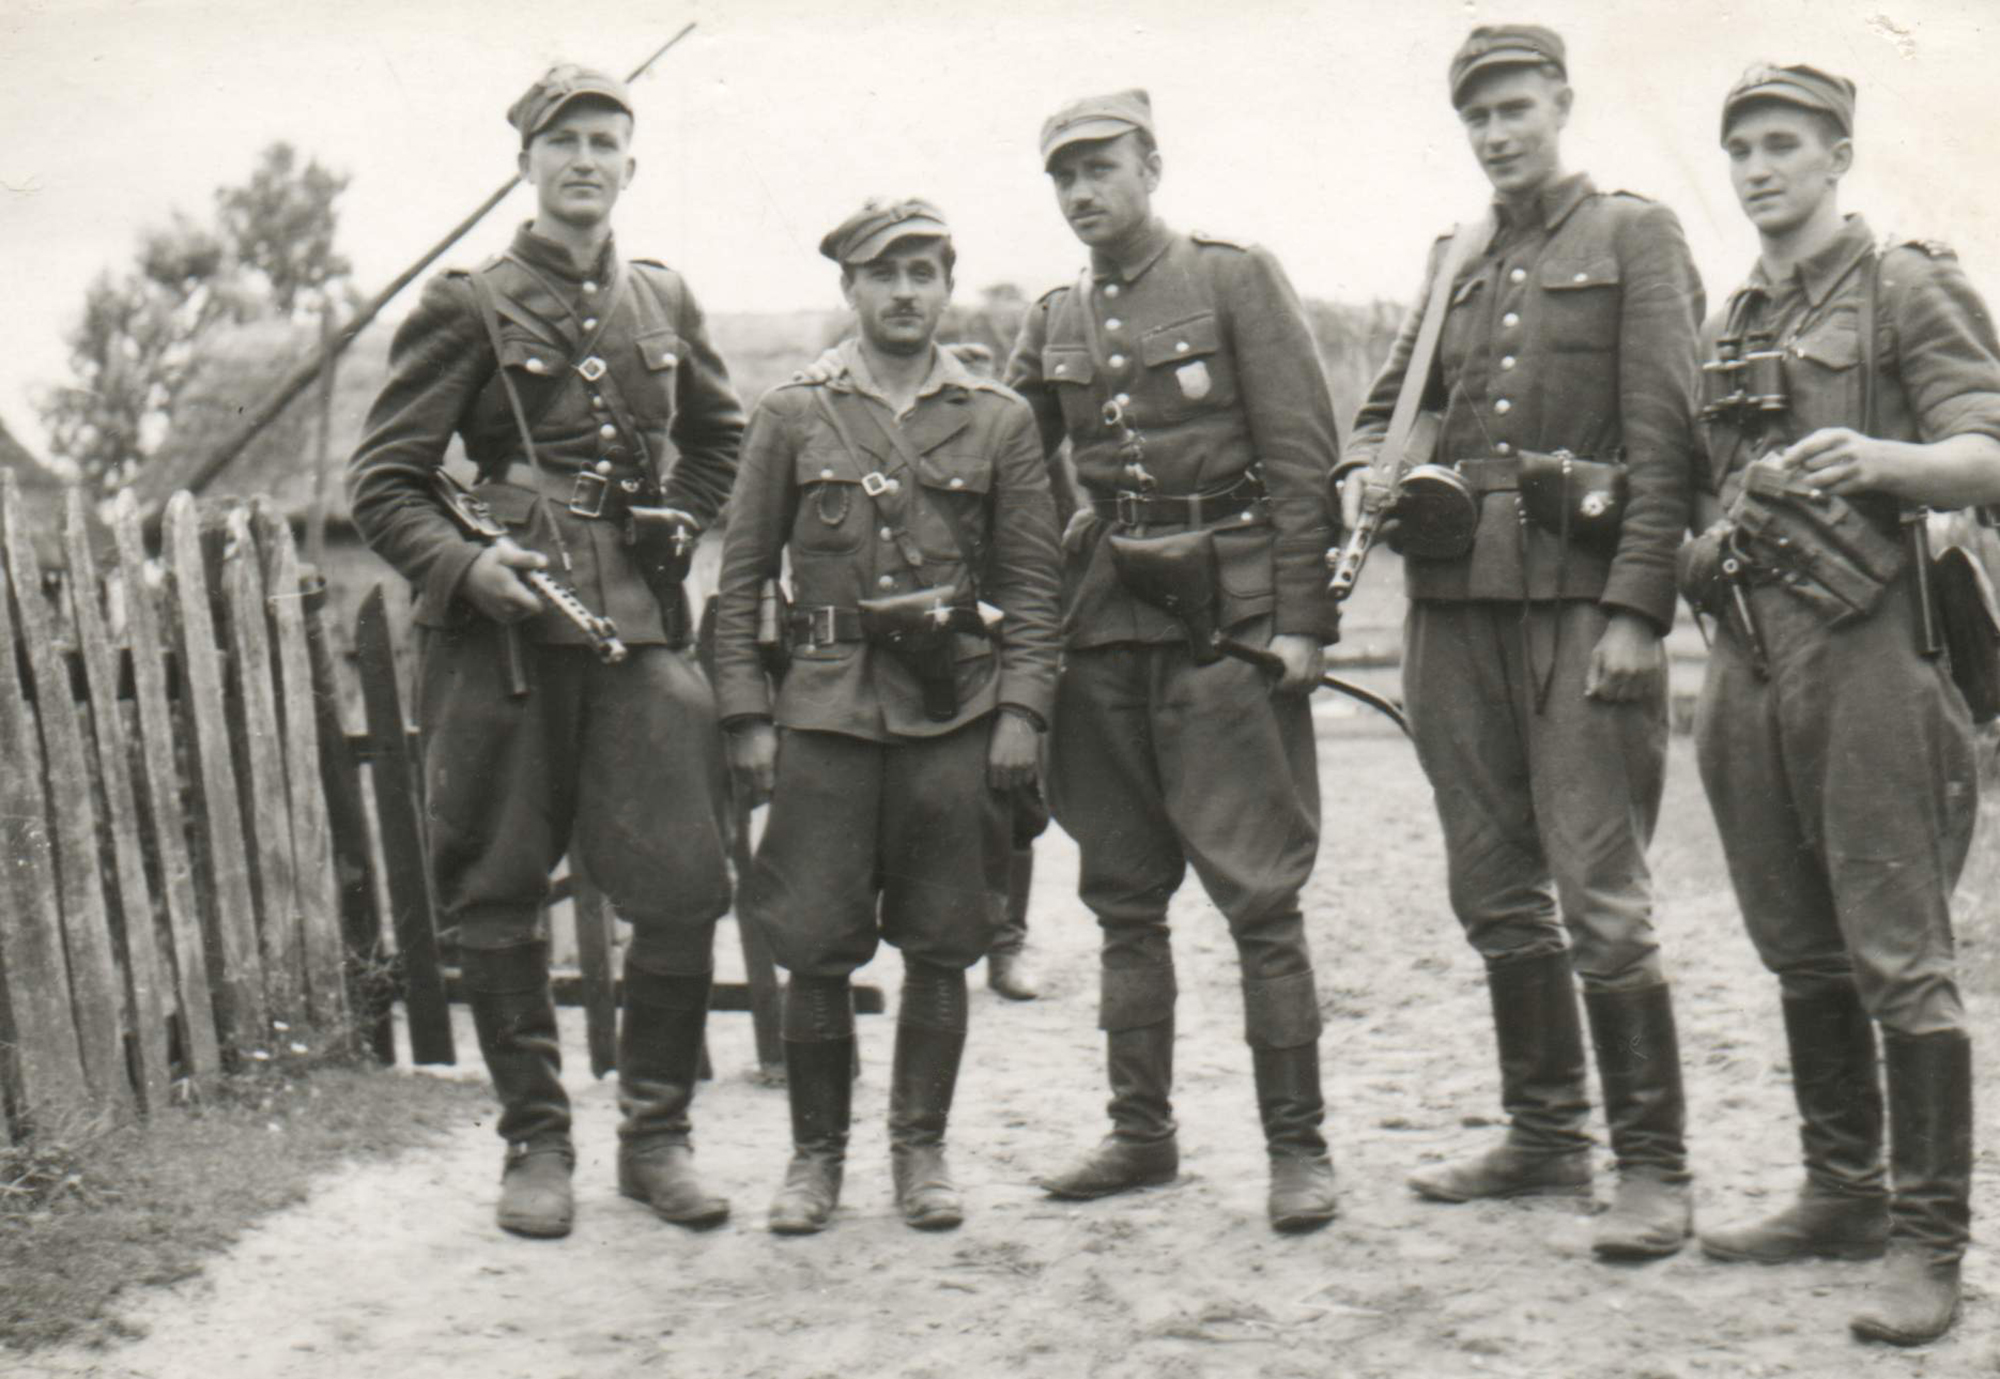 Od lewej: plut. Henryk Wieliczko „Lufa”, por. Marian Pluciński „Mścisław”, mjr Zygmunt Szendzielarz „Łupaszka”, plut. Jerzy Lejkowski „Szpagat”, plut. Zdzisław Badocha „Żelazny”.